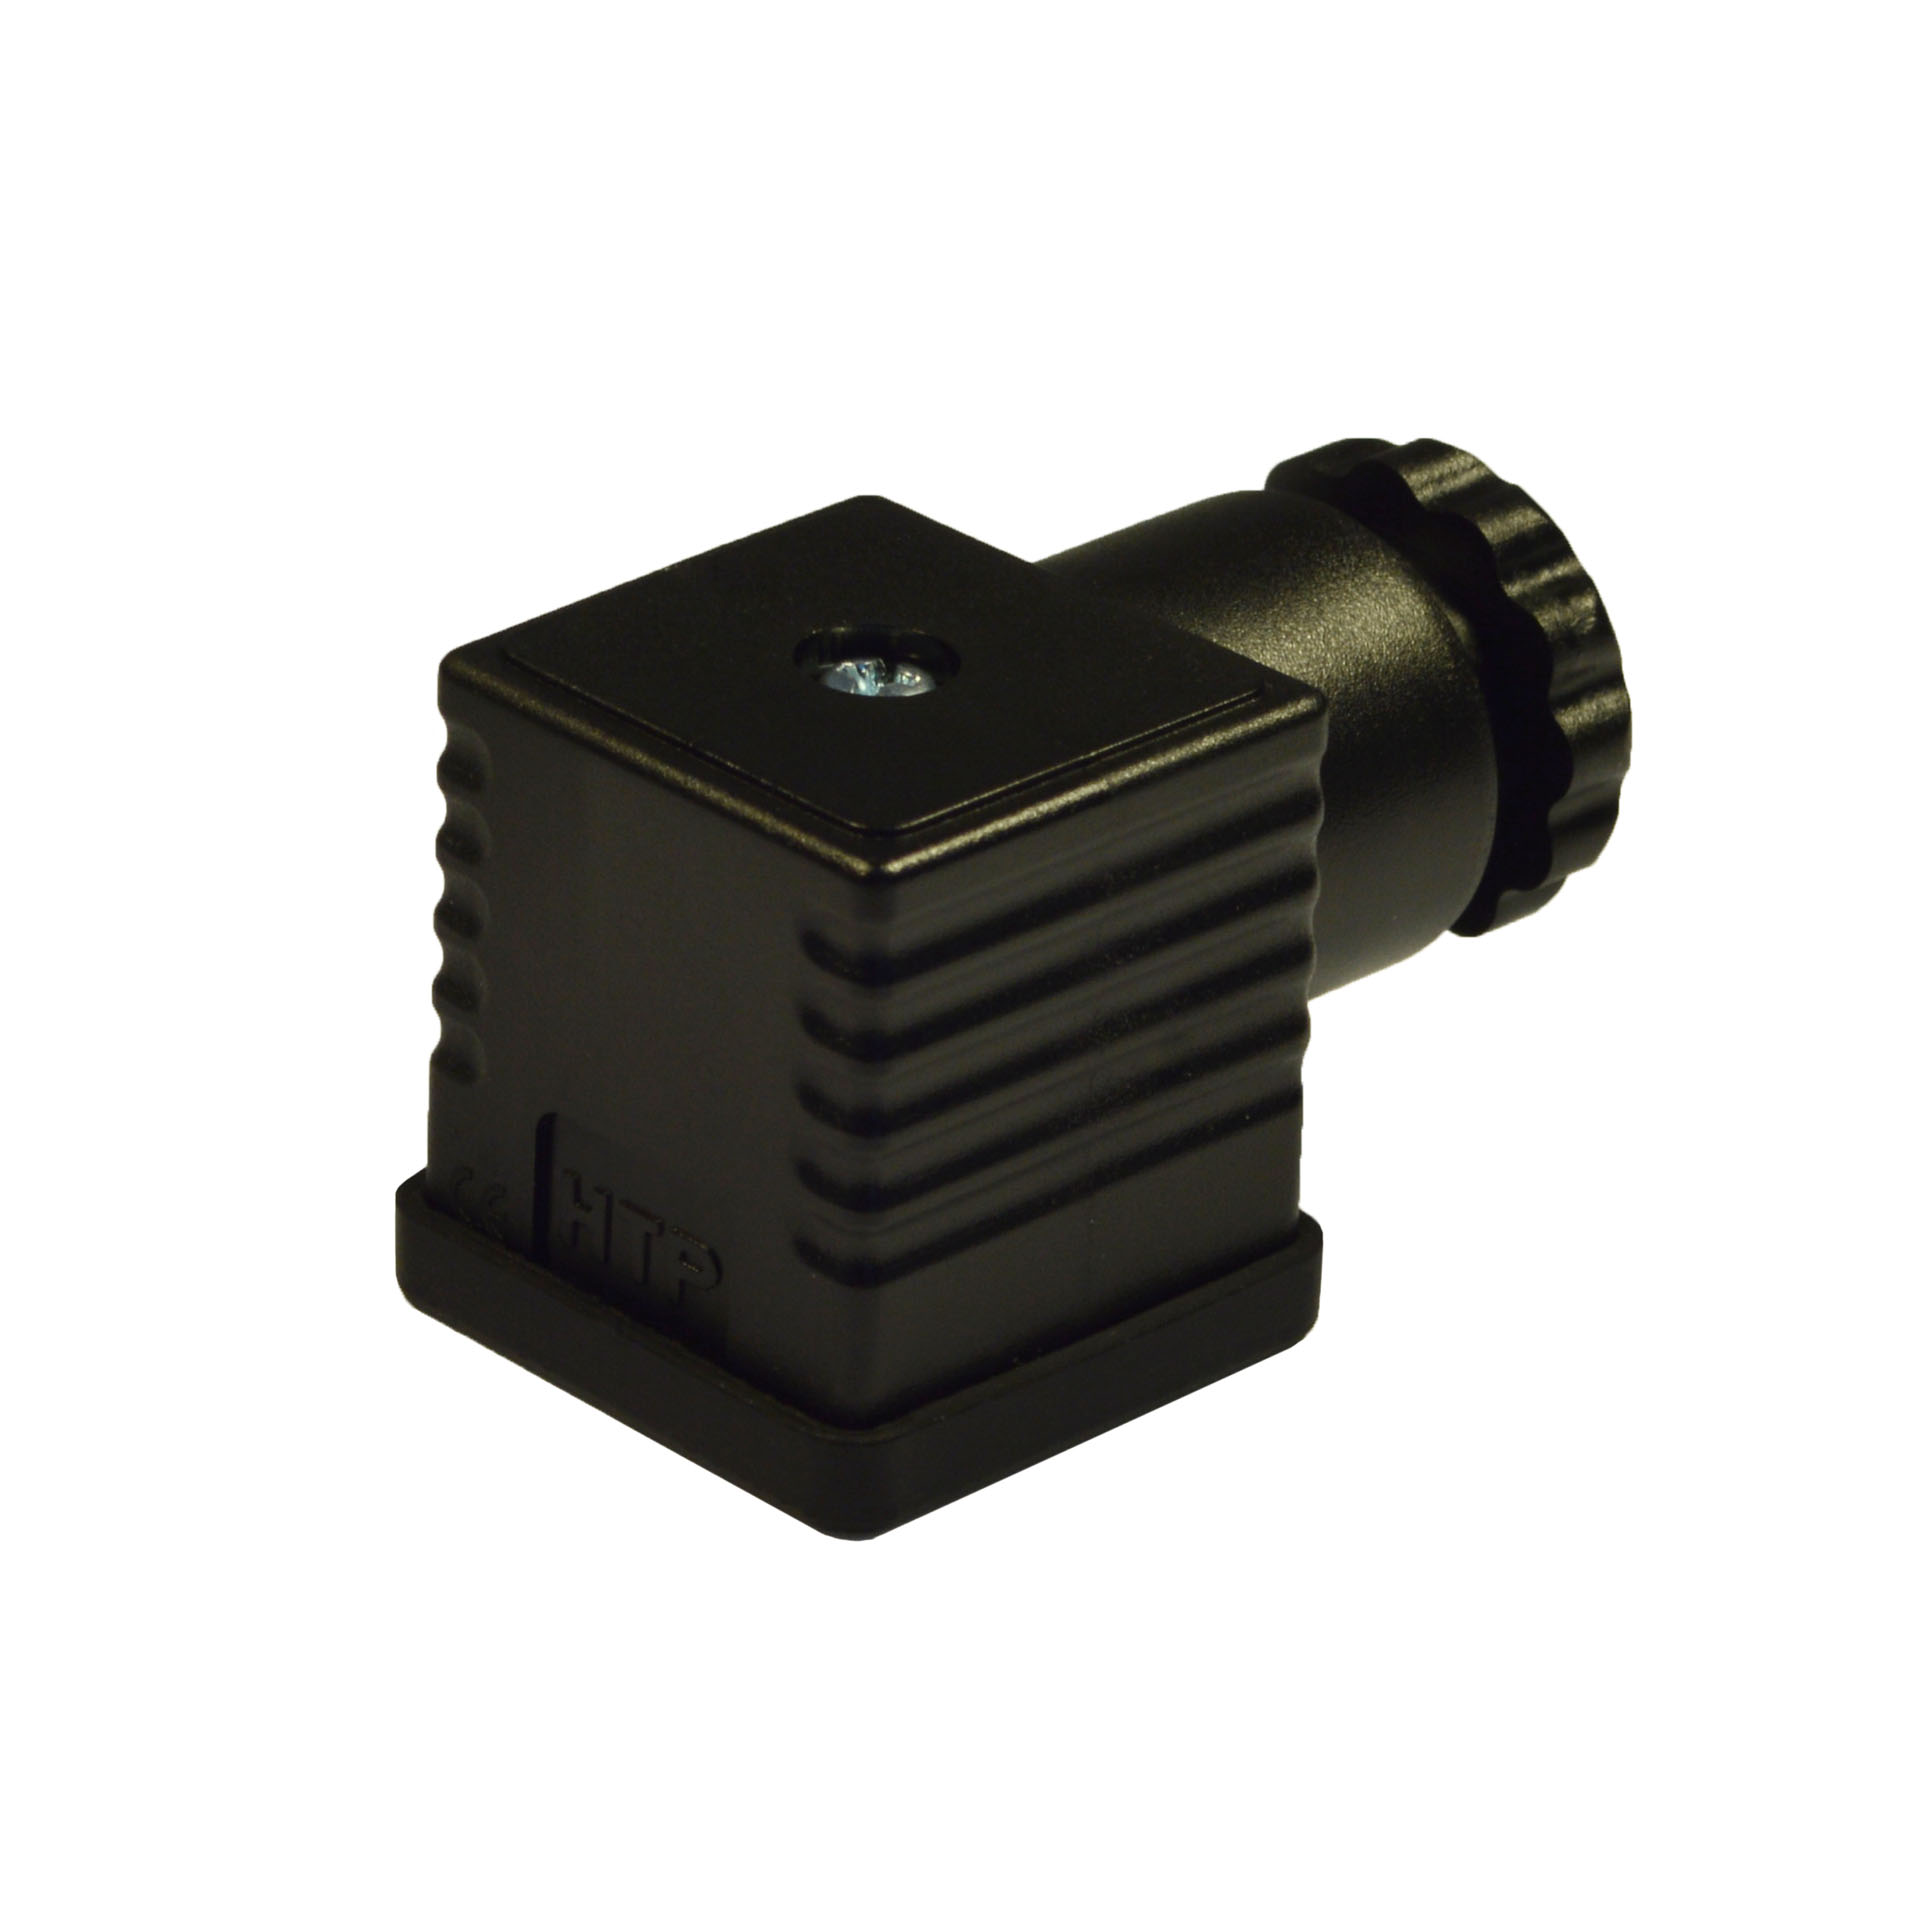 EN175301-803(typeA),black,2p+PE(h.12),250V AC/300VDC,PG9/11 unif.,suitable for faston contacts